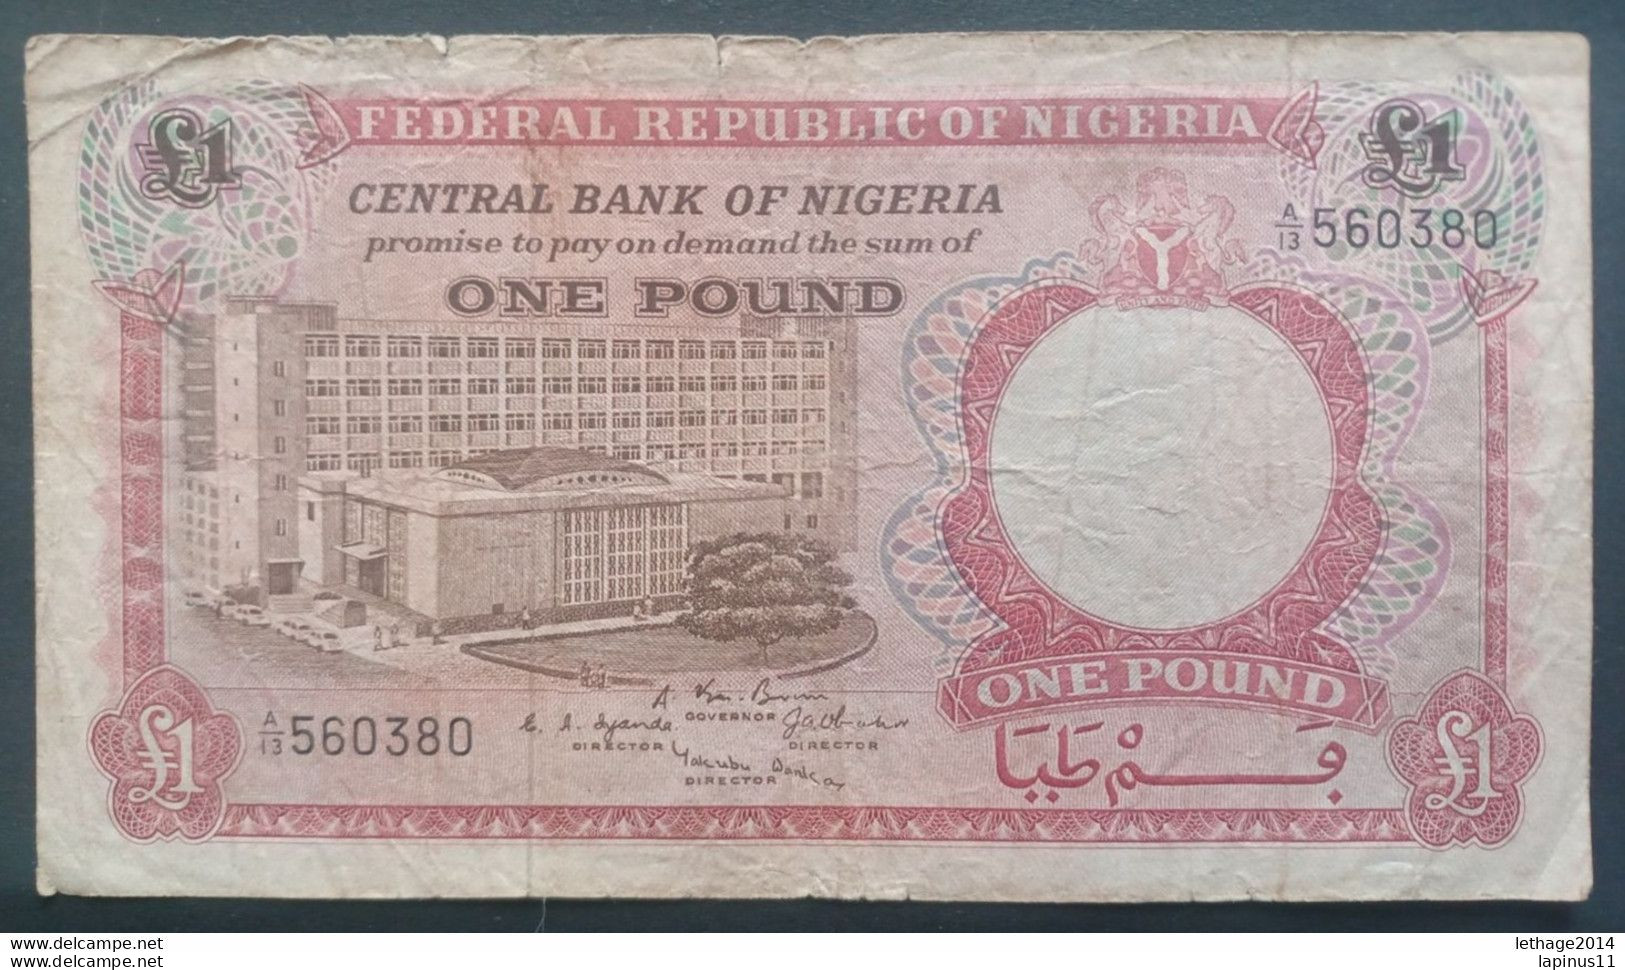 BANKNOTE نيجيريا NIGERIA 1 POUND 1958 - Nigeria